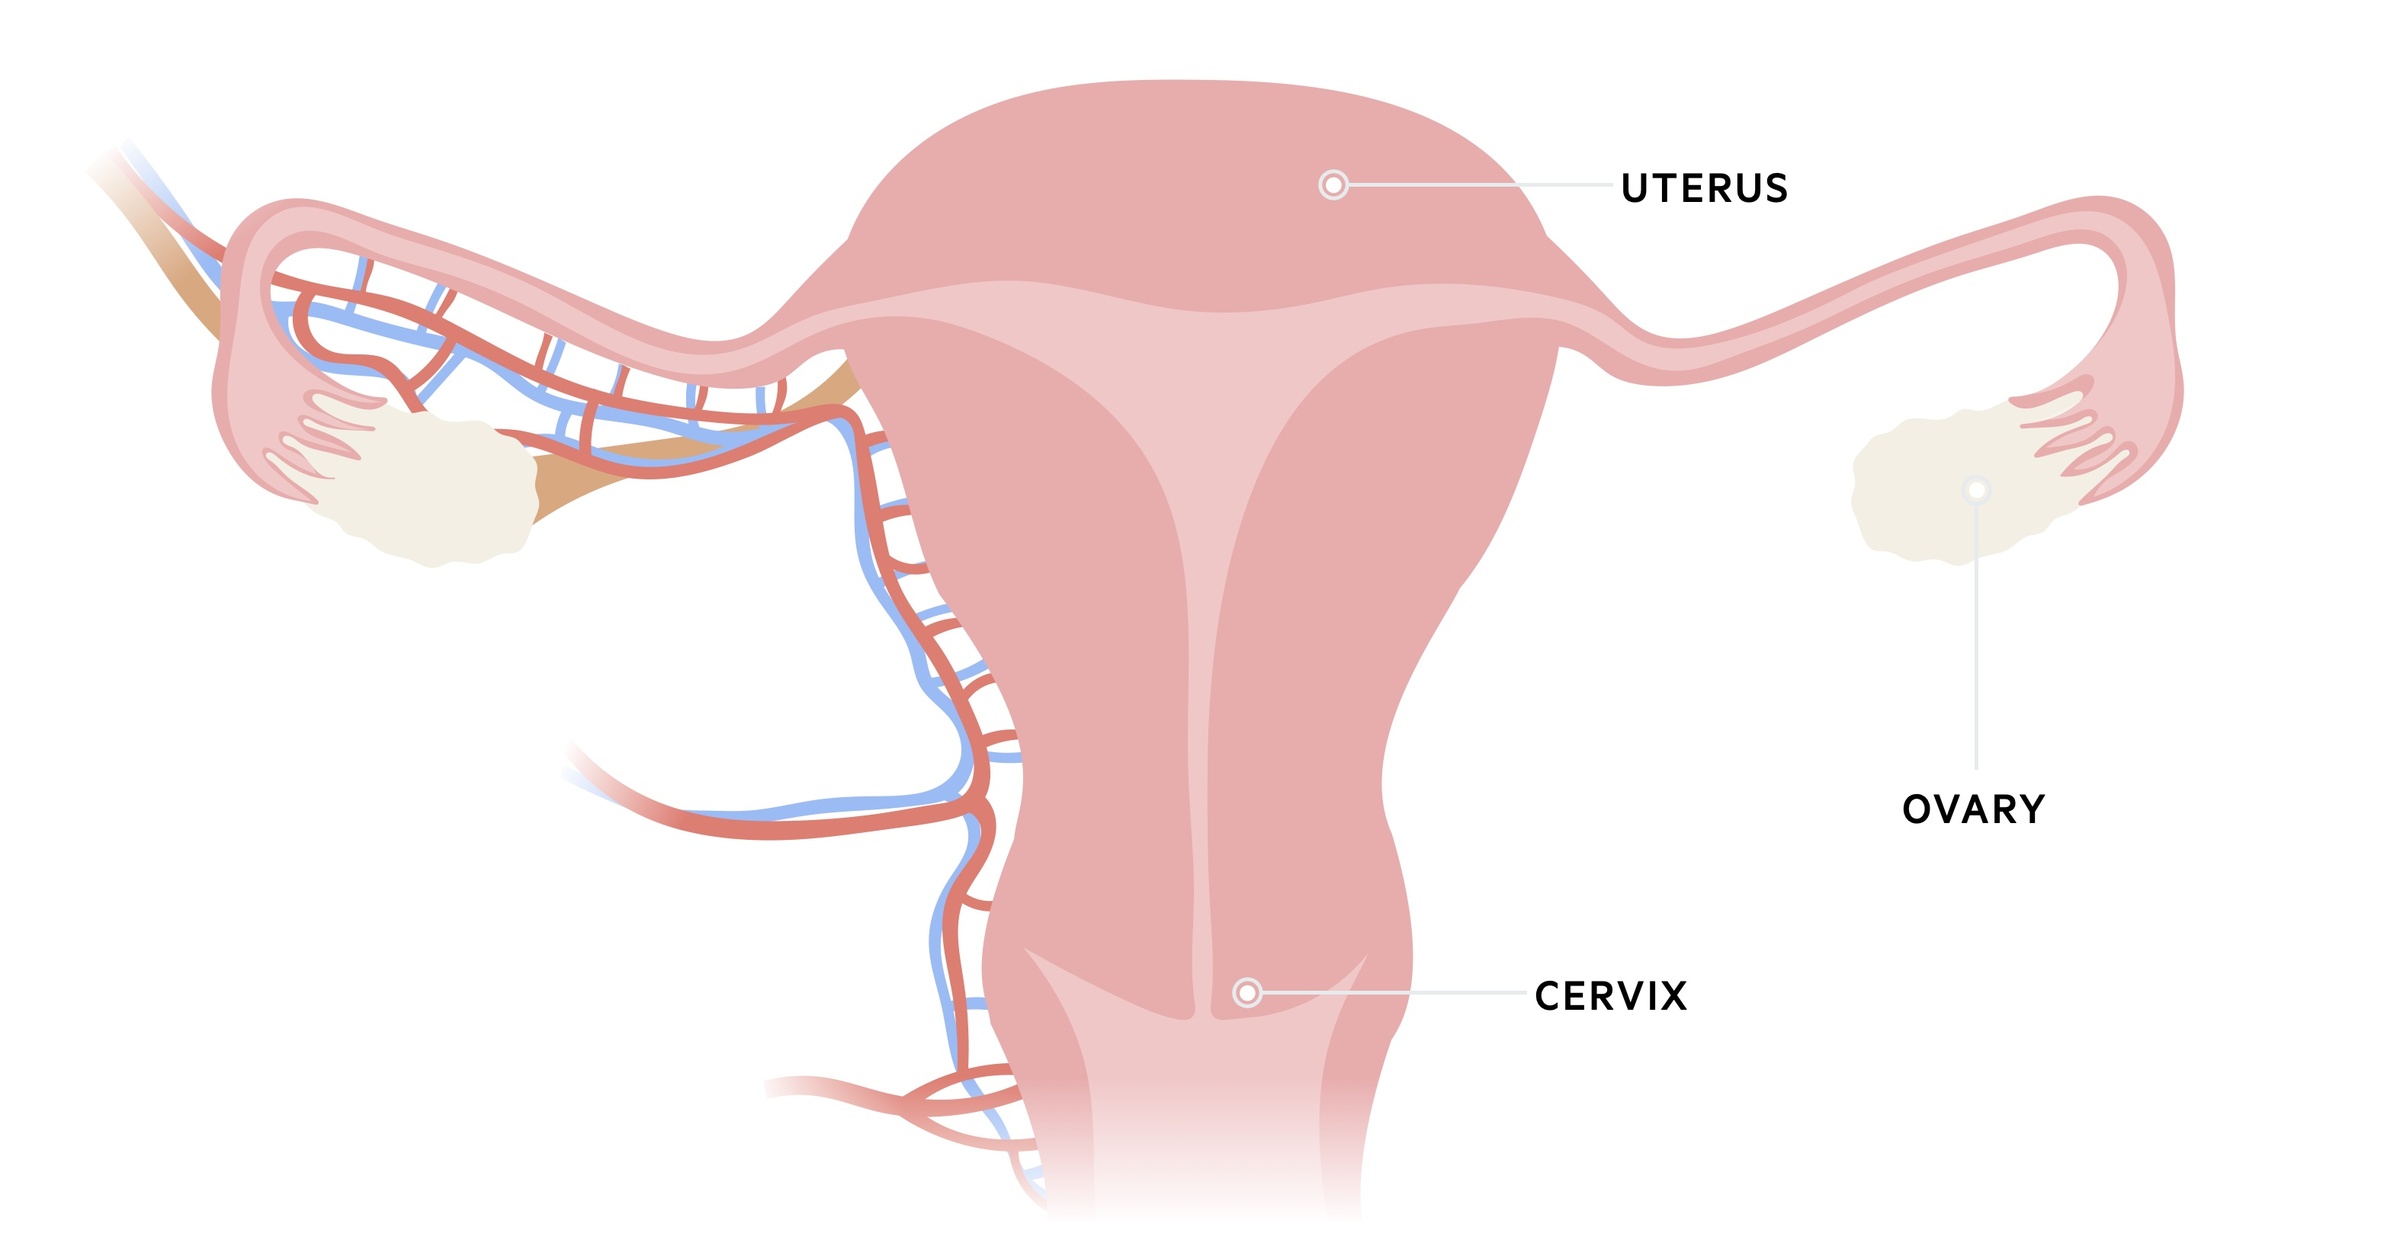 Uterine anatomy